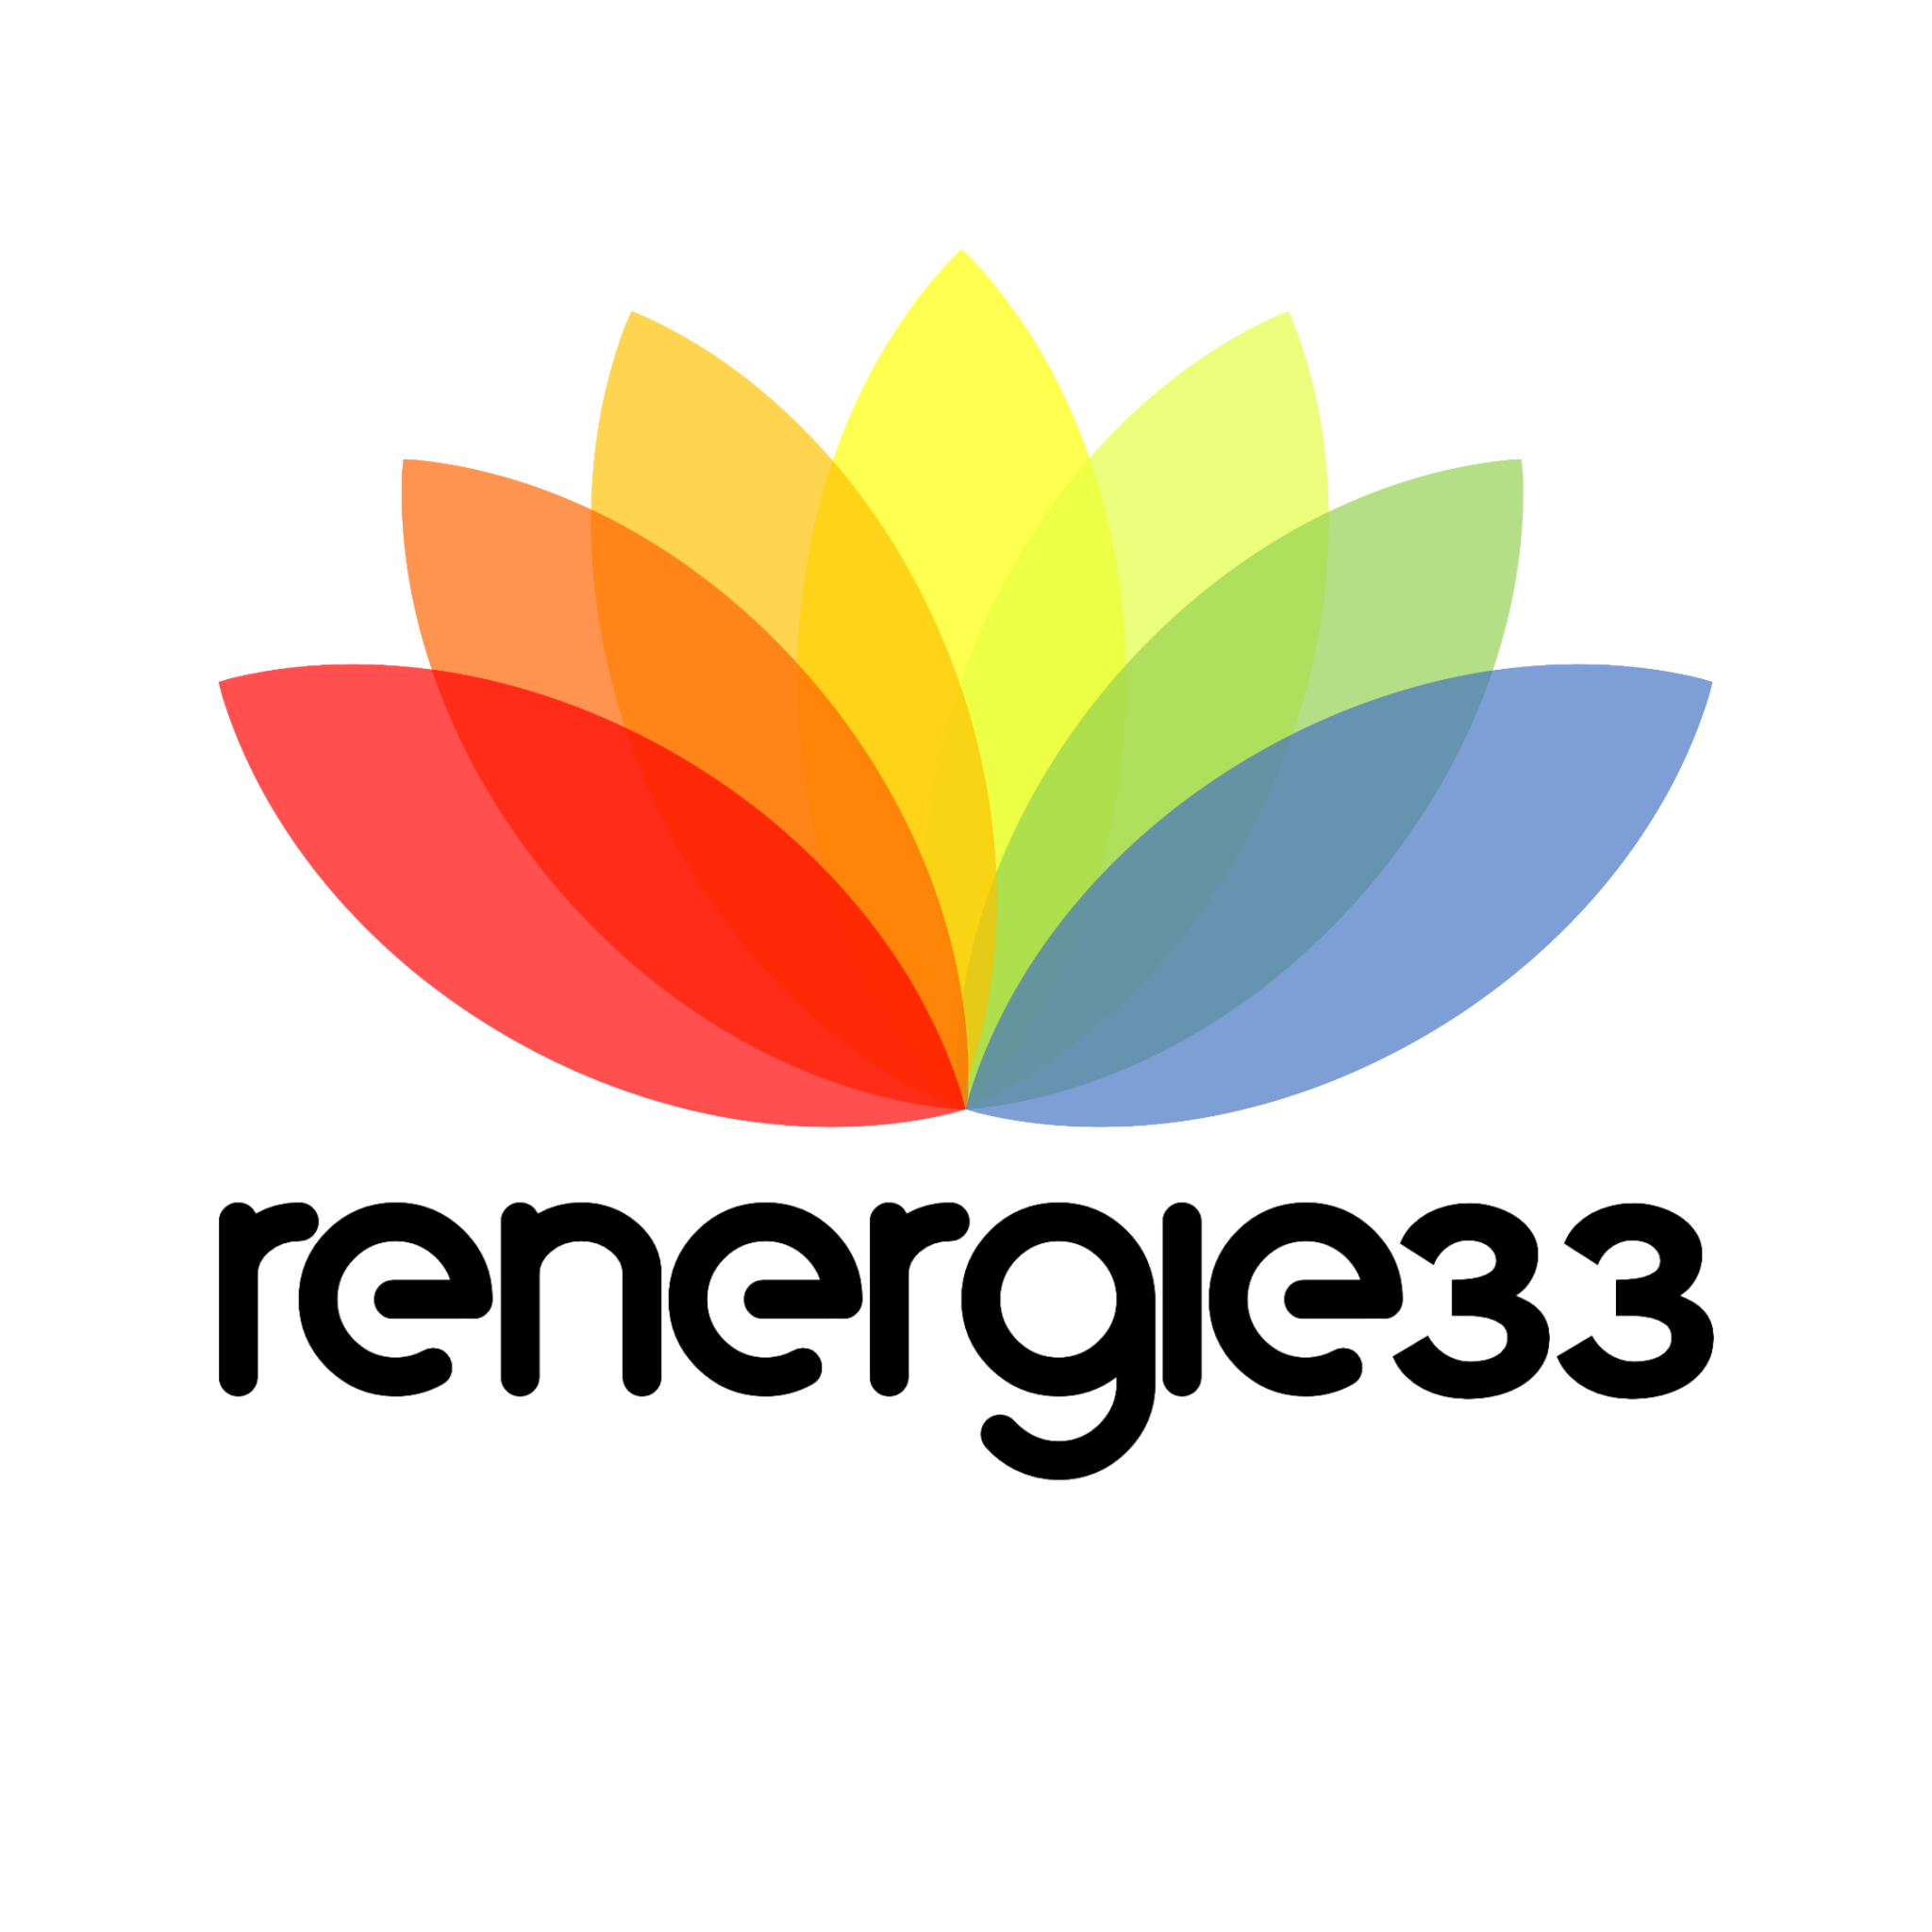 RENERGIE33